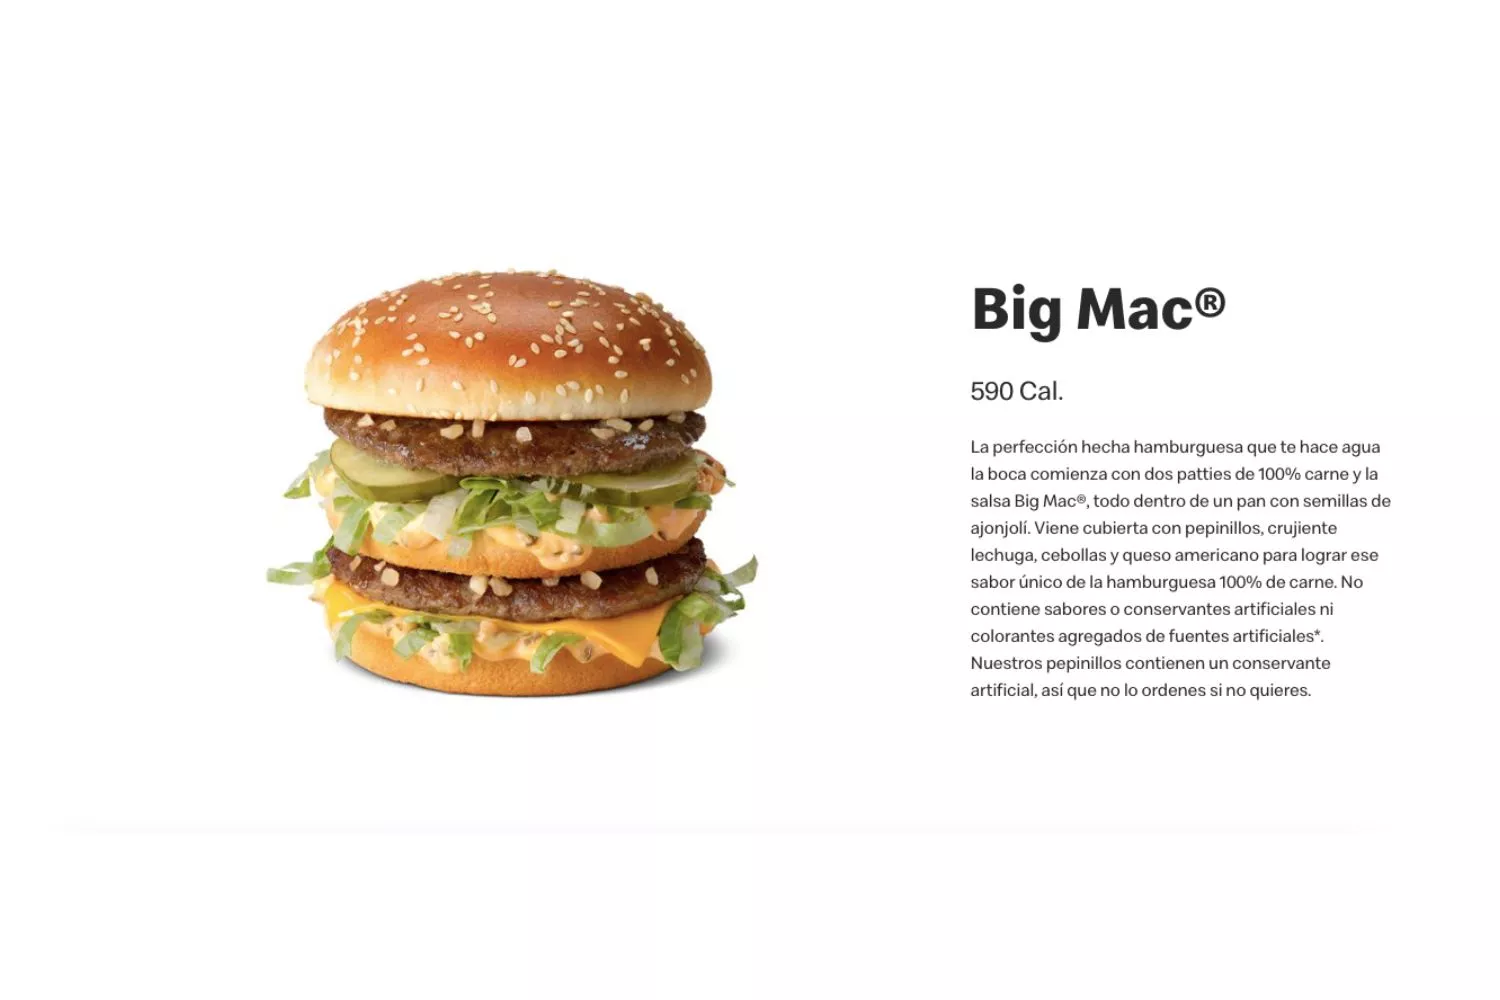 Big Mac, la hamburguesa más icónica de McDonald's / MCDONALD'S